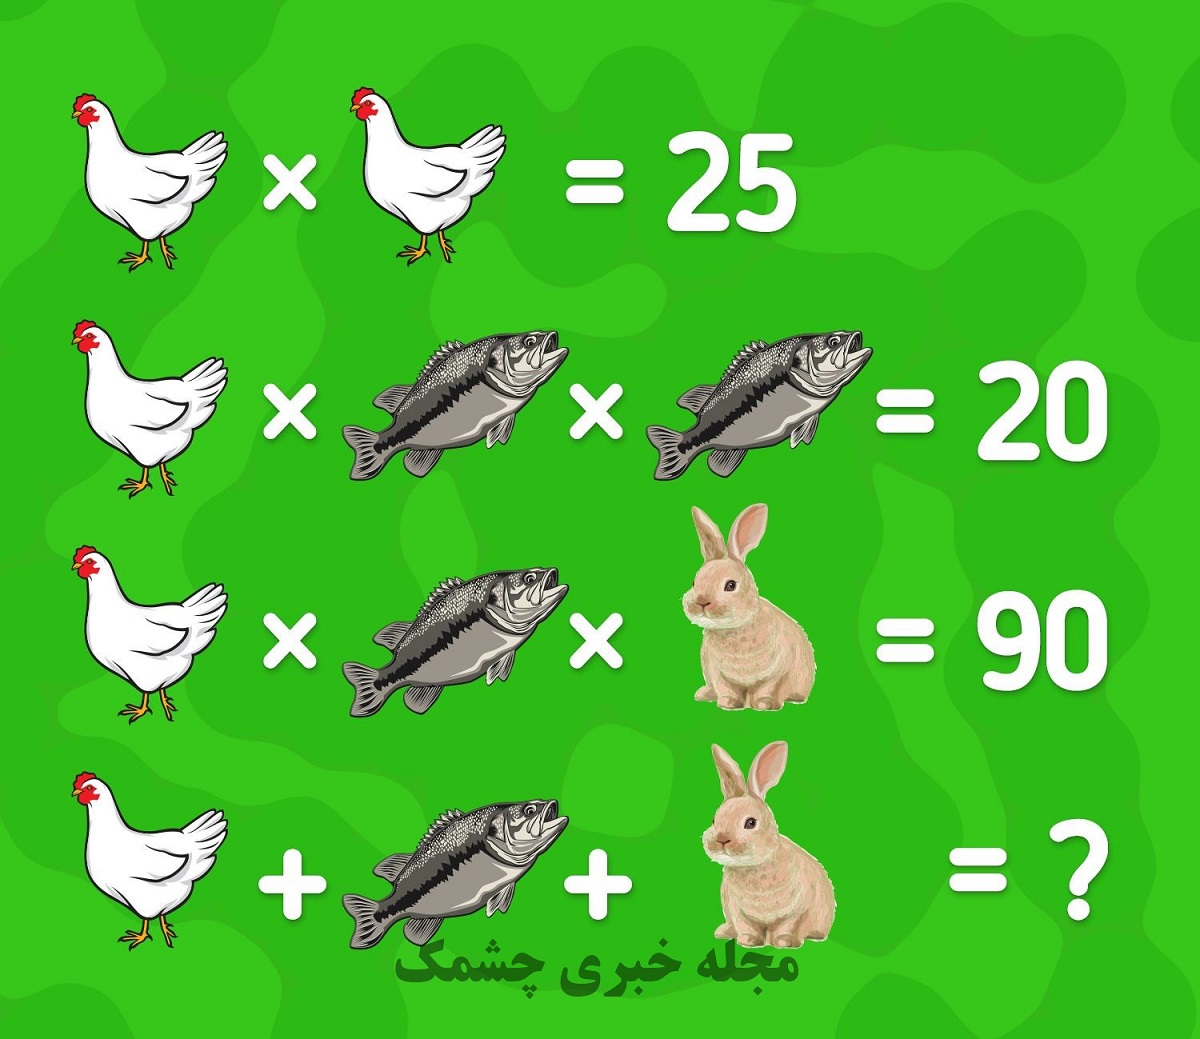 آزمون ریاضی مرغ و ماهی و خرگوش